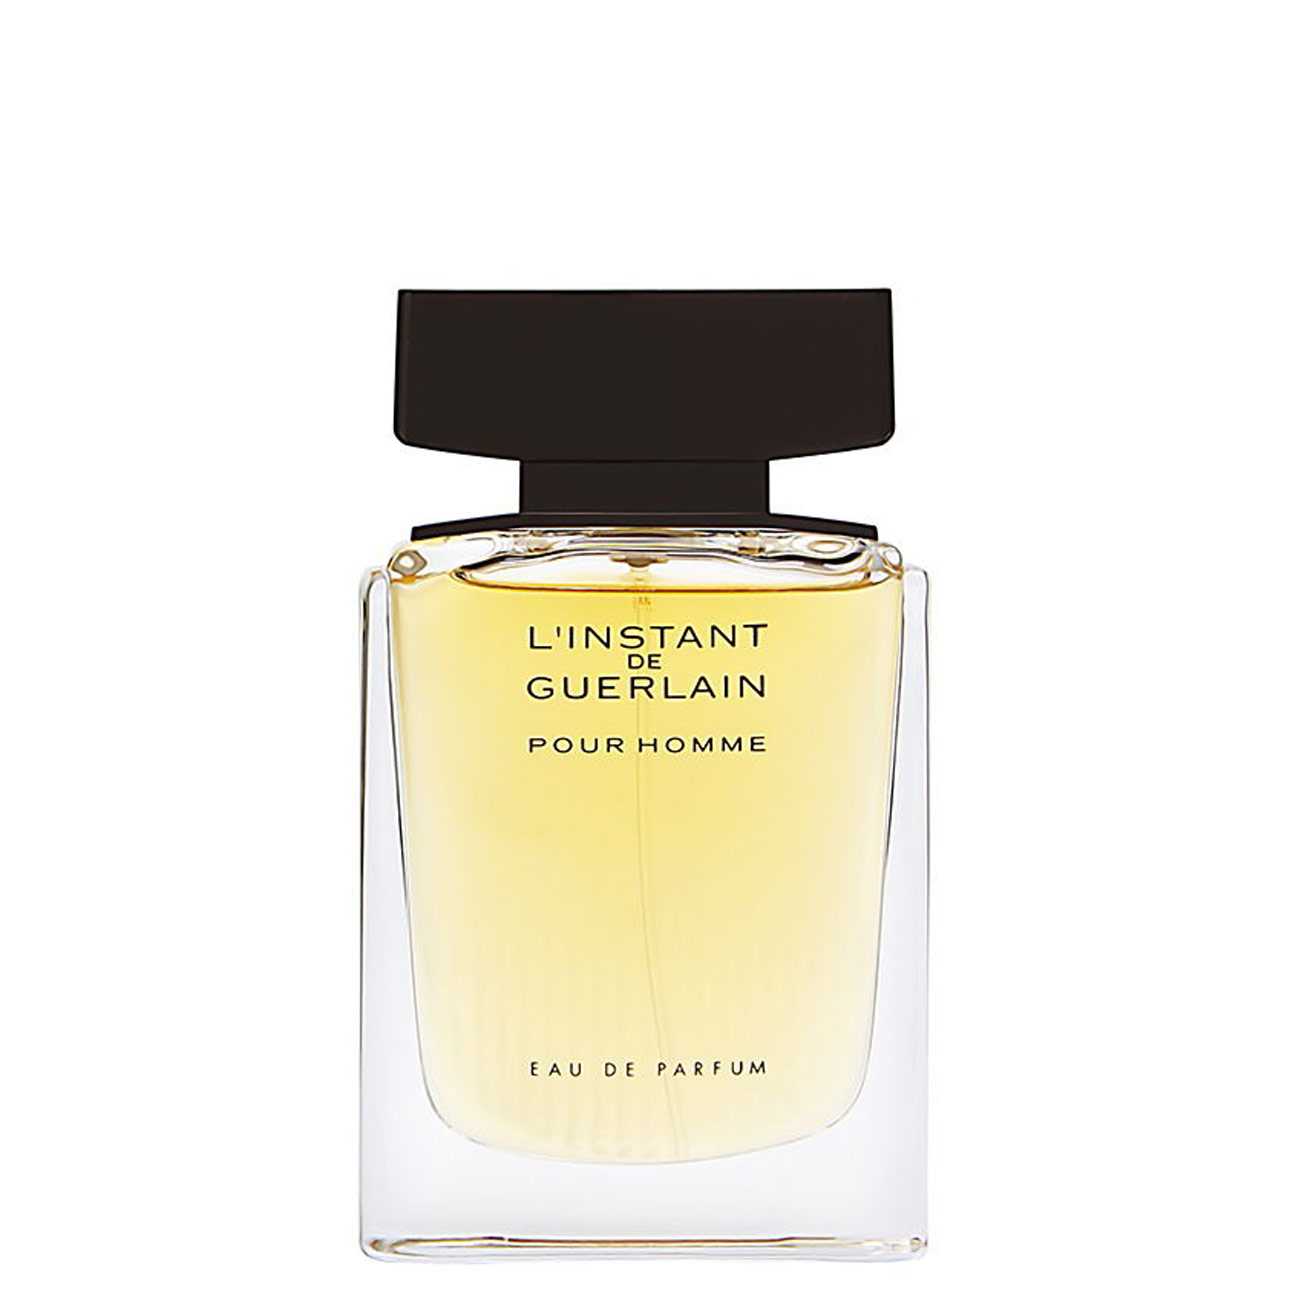 Apa de Parfum Guerlain L'INSTANT DE GUERLAIN 75ml cu comanda online